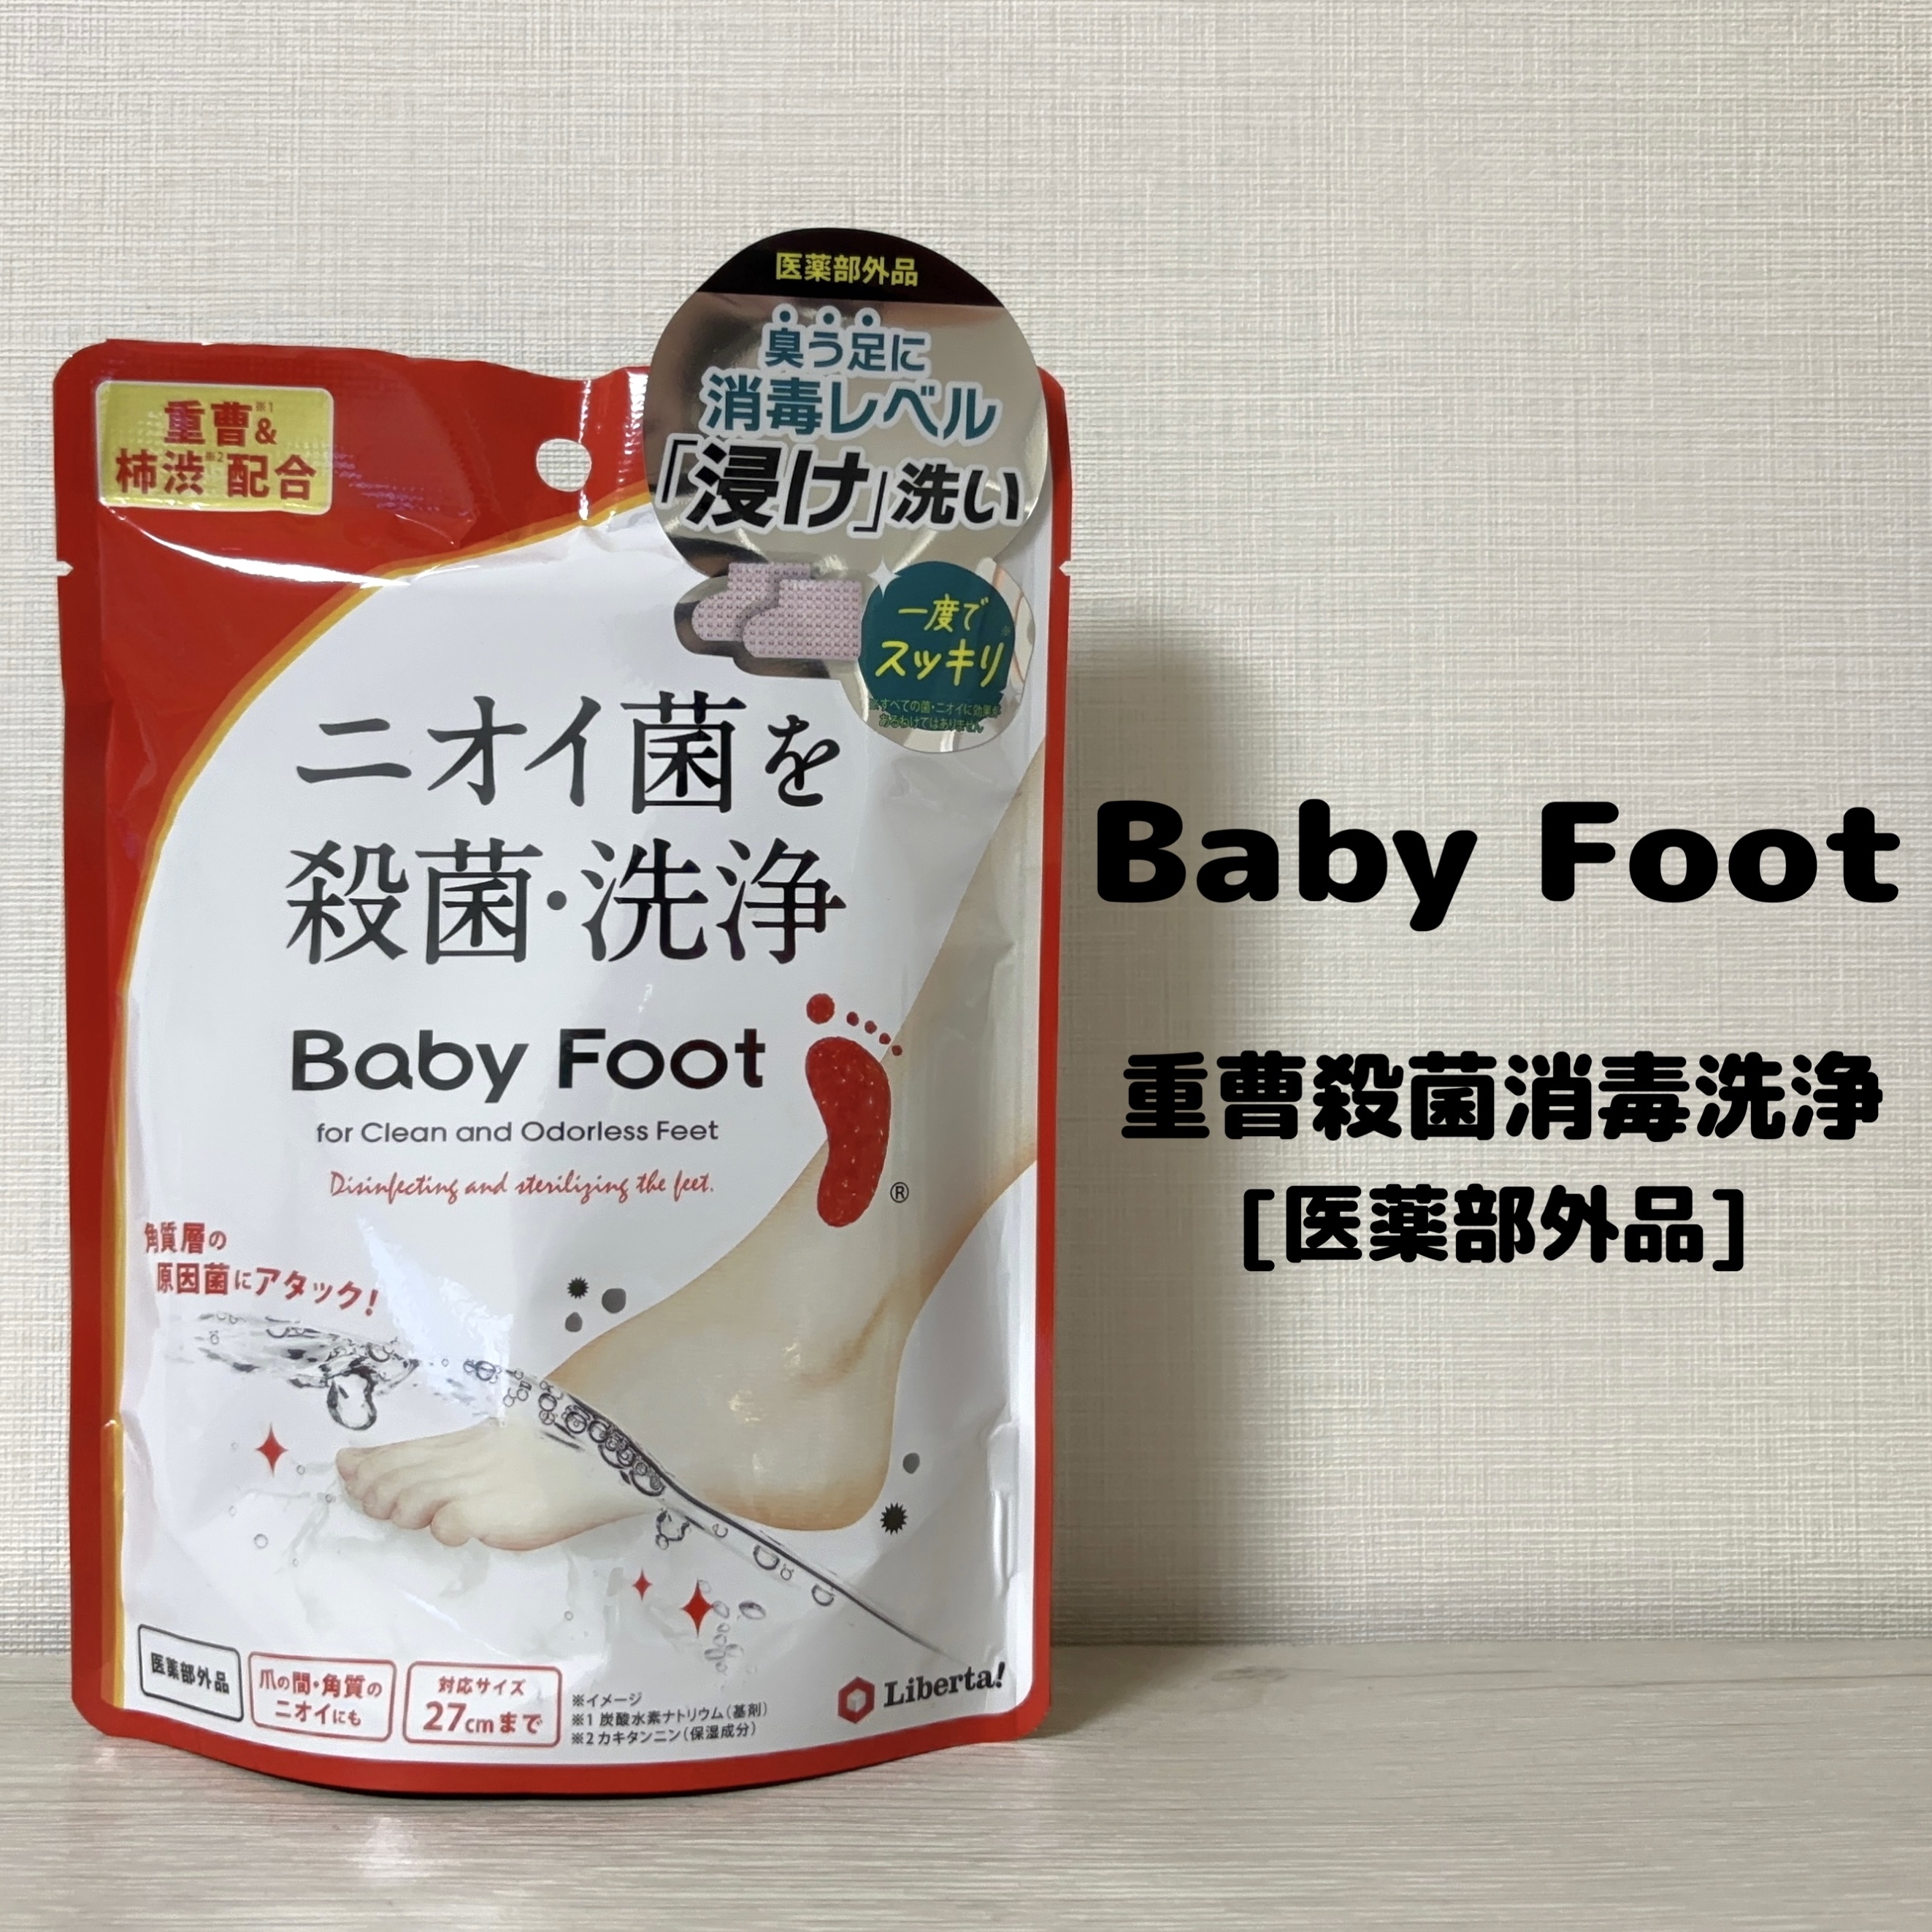 Baby Foot(ベビーフット) 重曹殺菌消毒洗浄の良い点・メリットに関するもいさんの口コミ画像1